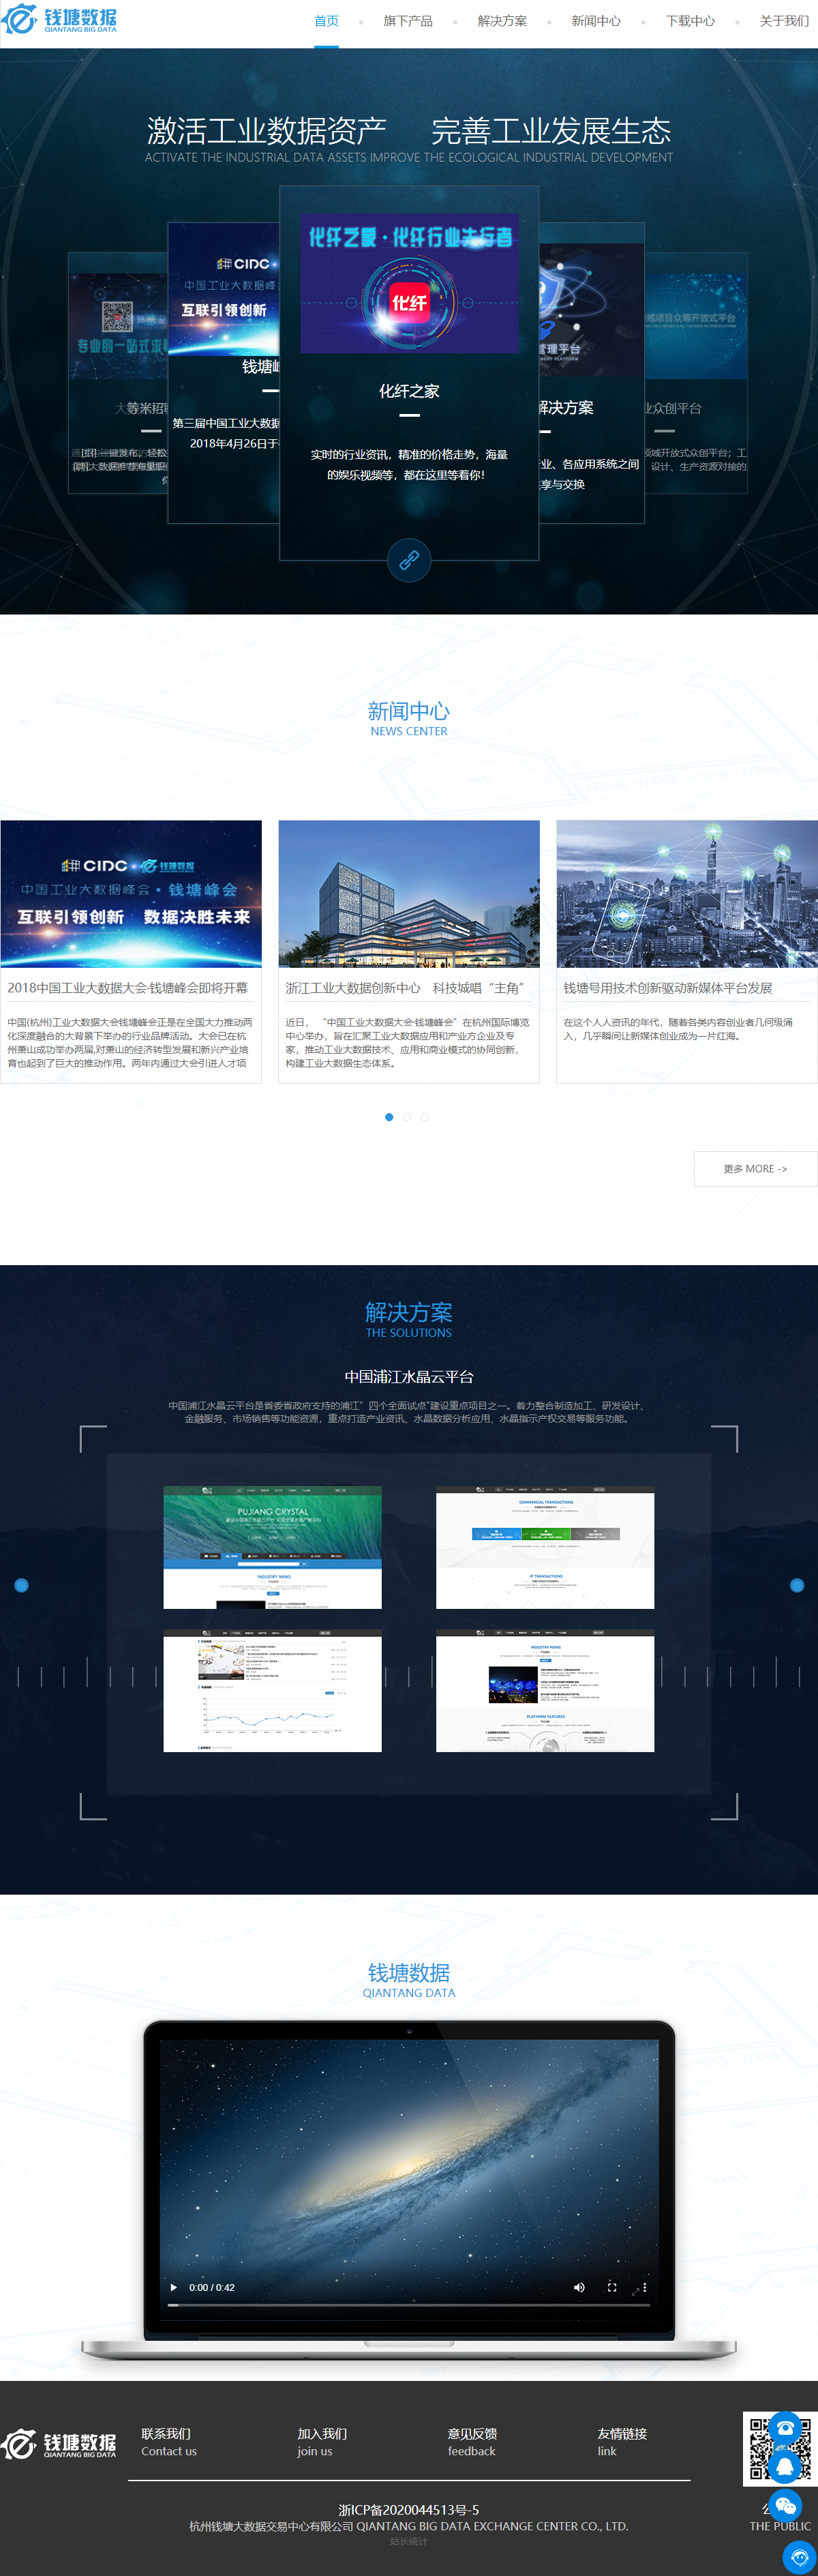 杭州钱塘大数据交易中心有限公司网站案例